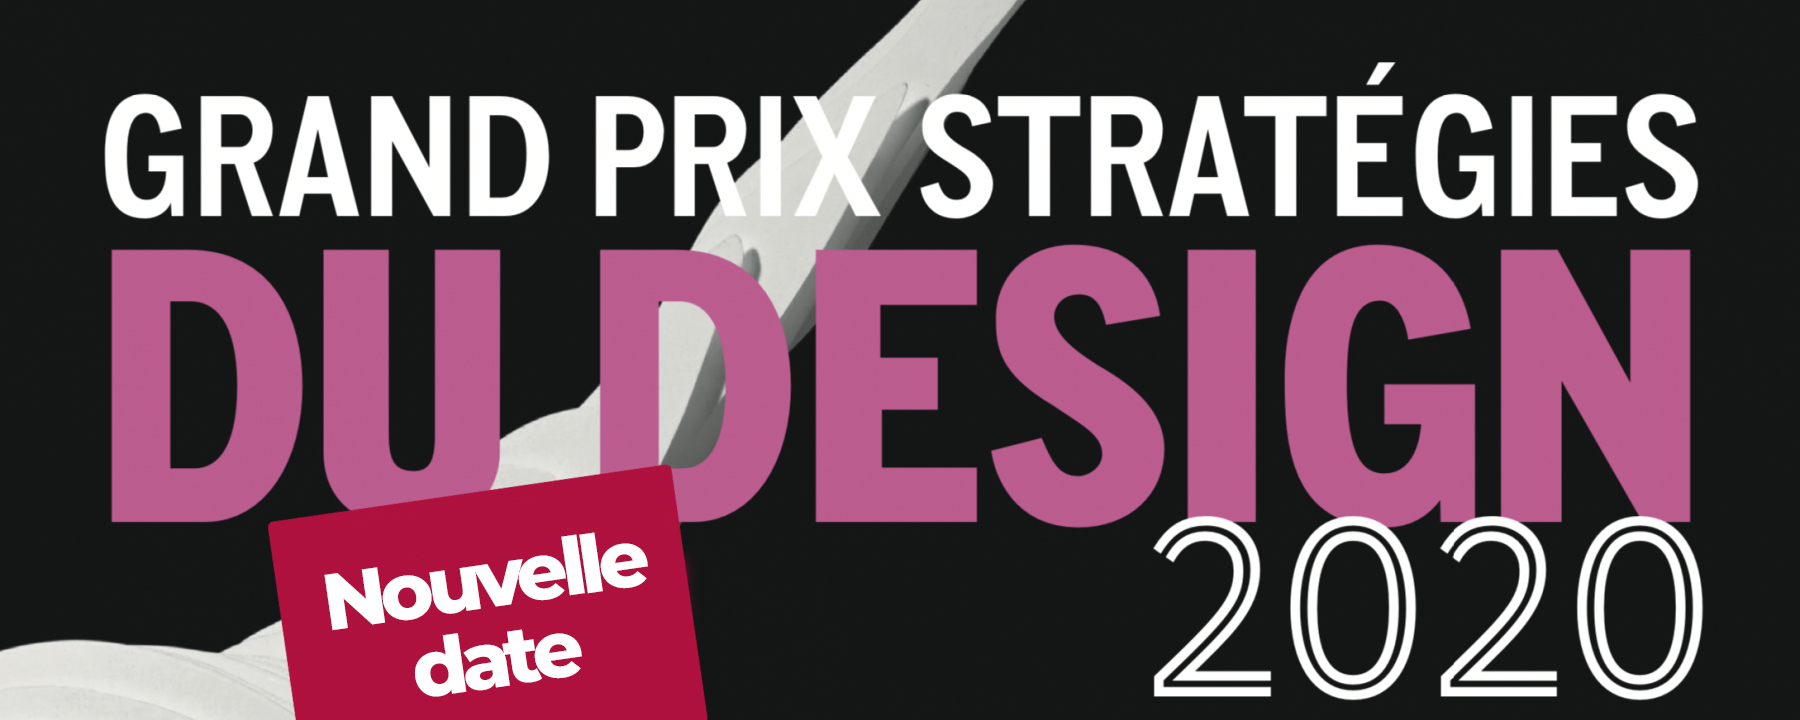 Grand prix stratégies du design 2020, un événement organisé par Stratégies